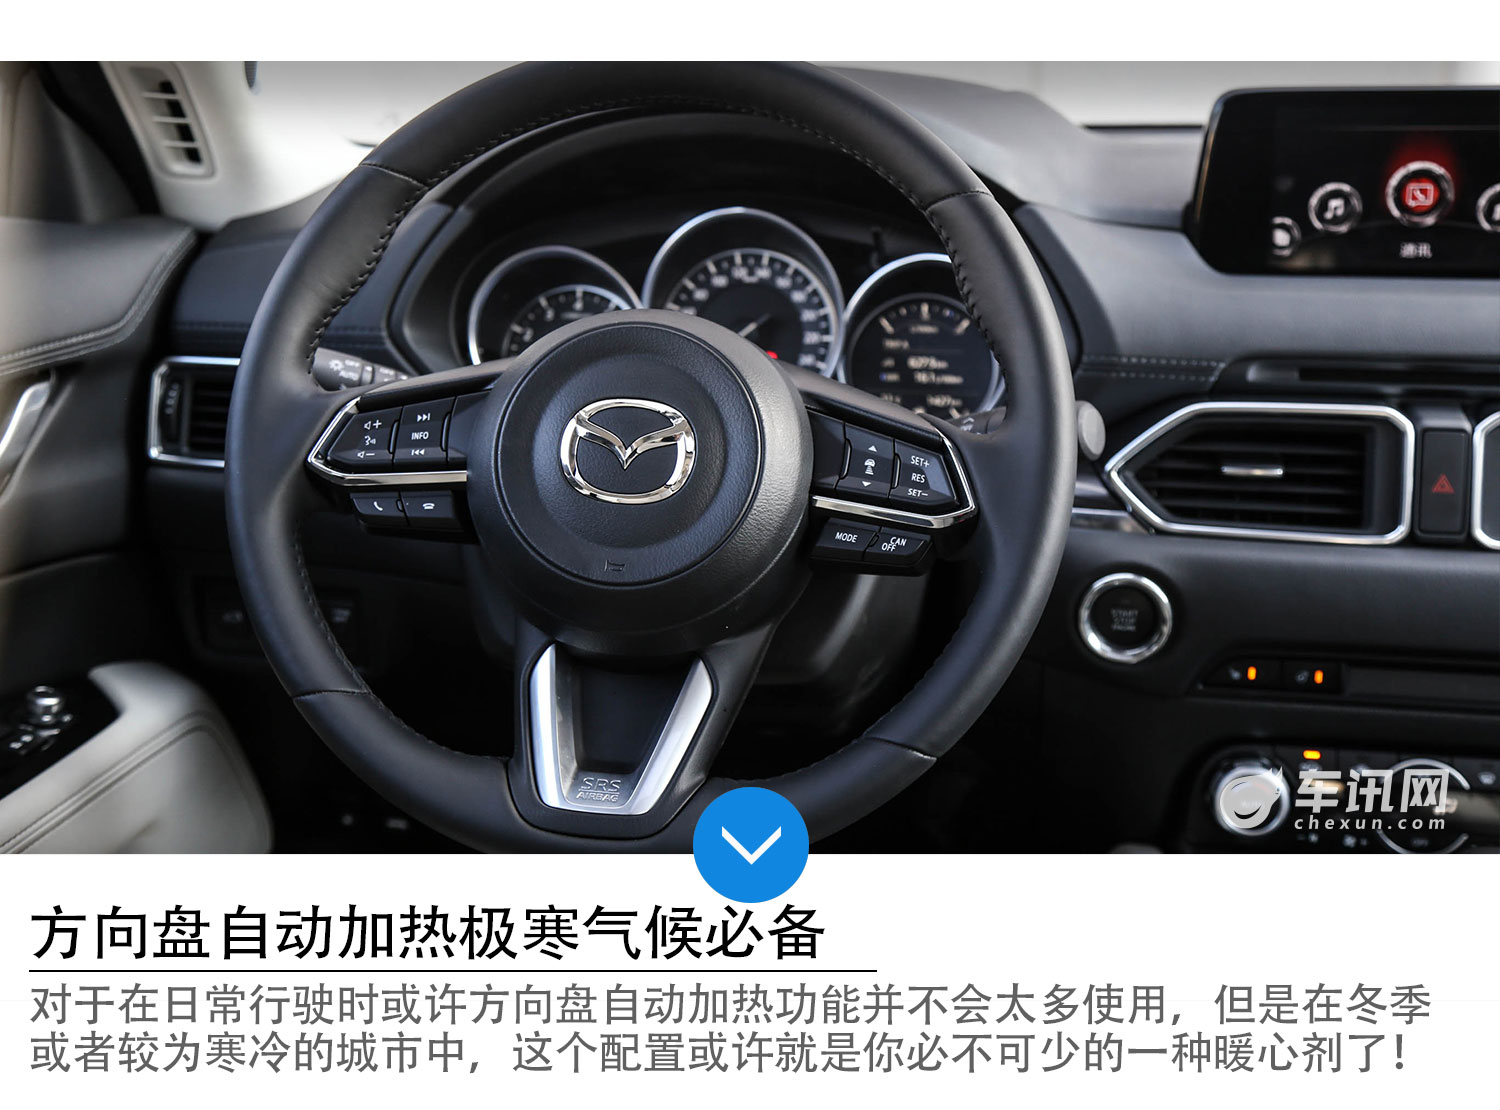 中国最北端的冰雪挑战 试第二代Mazda CX-5